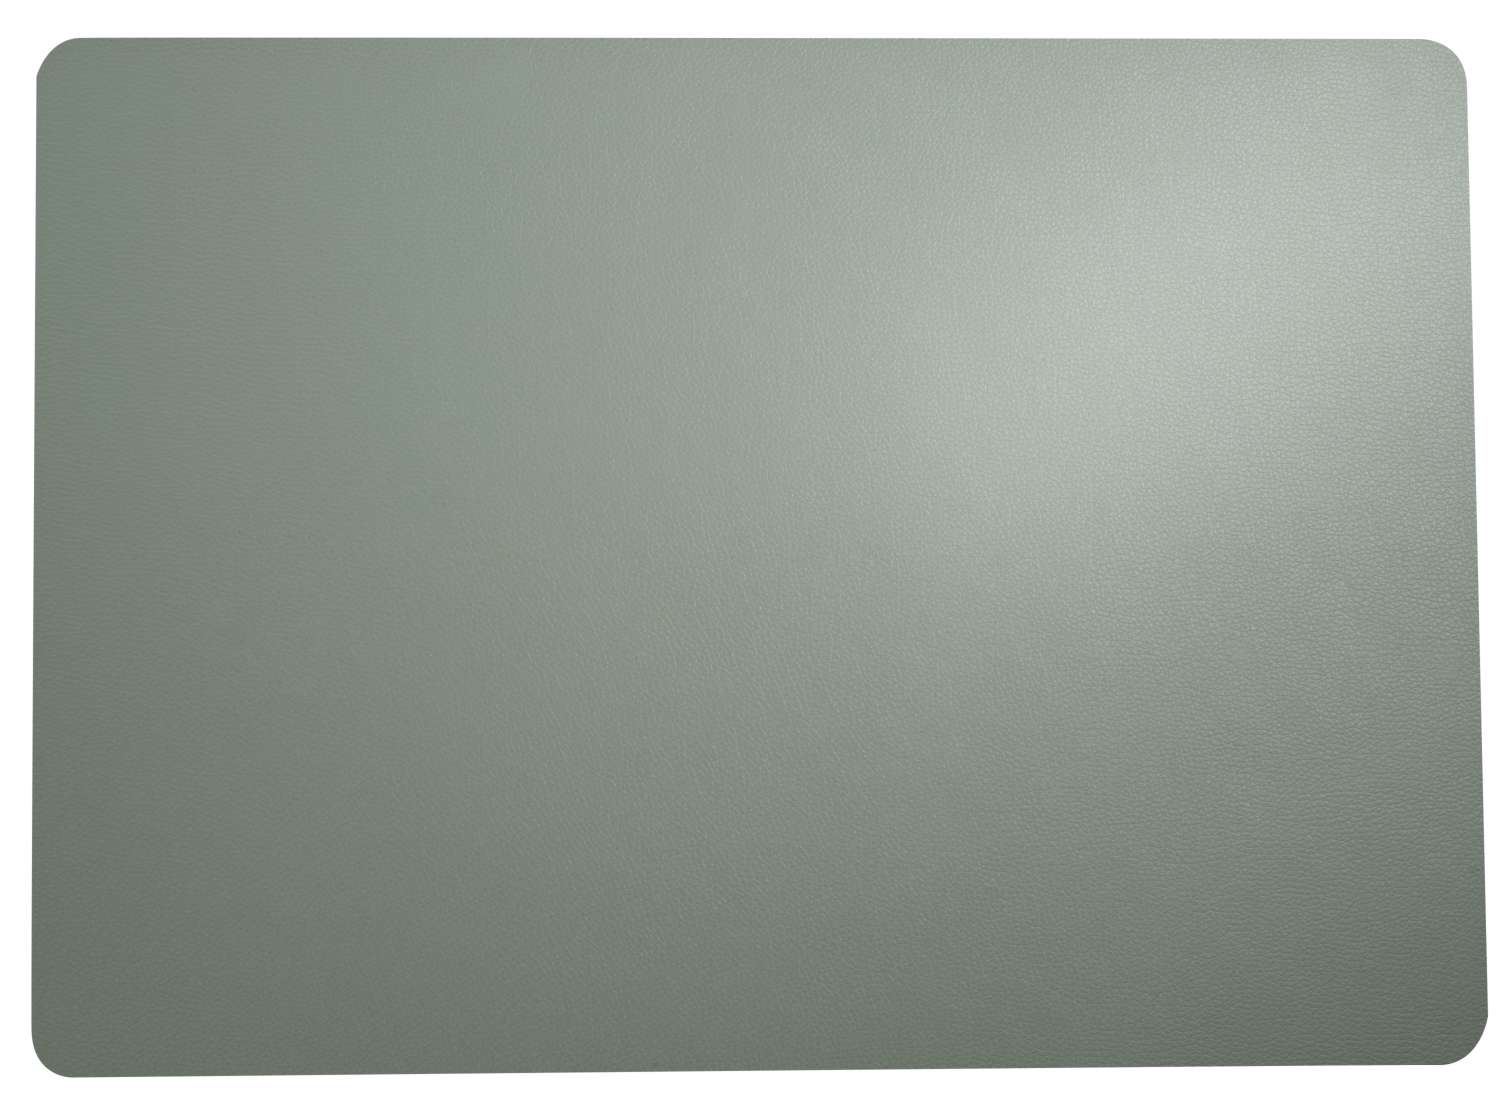  leather optic fine Tischset, mint  Breite: 33cm Länge: 46cm  